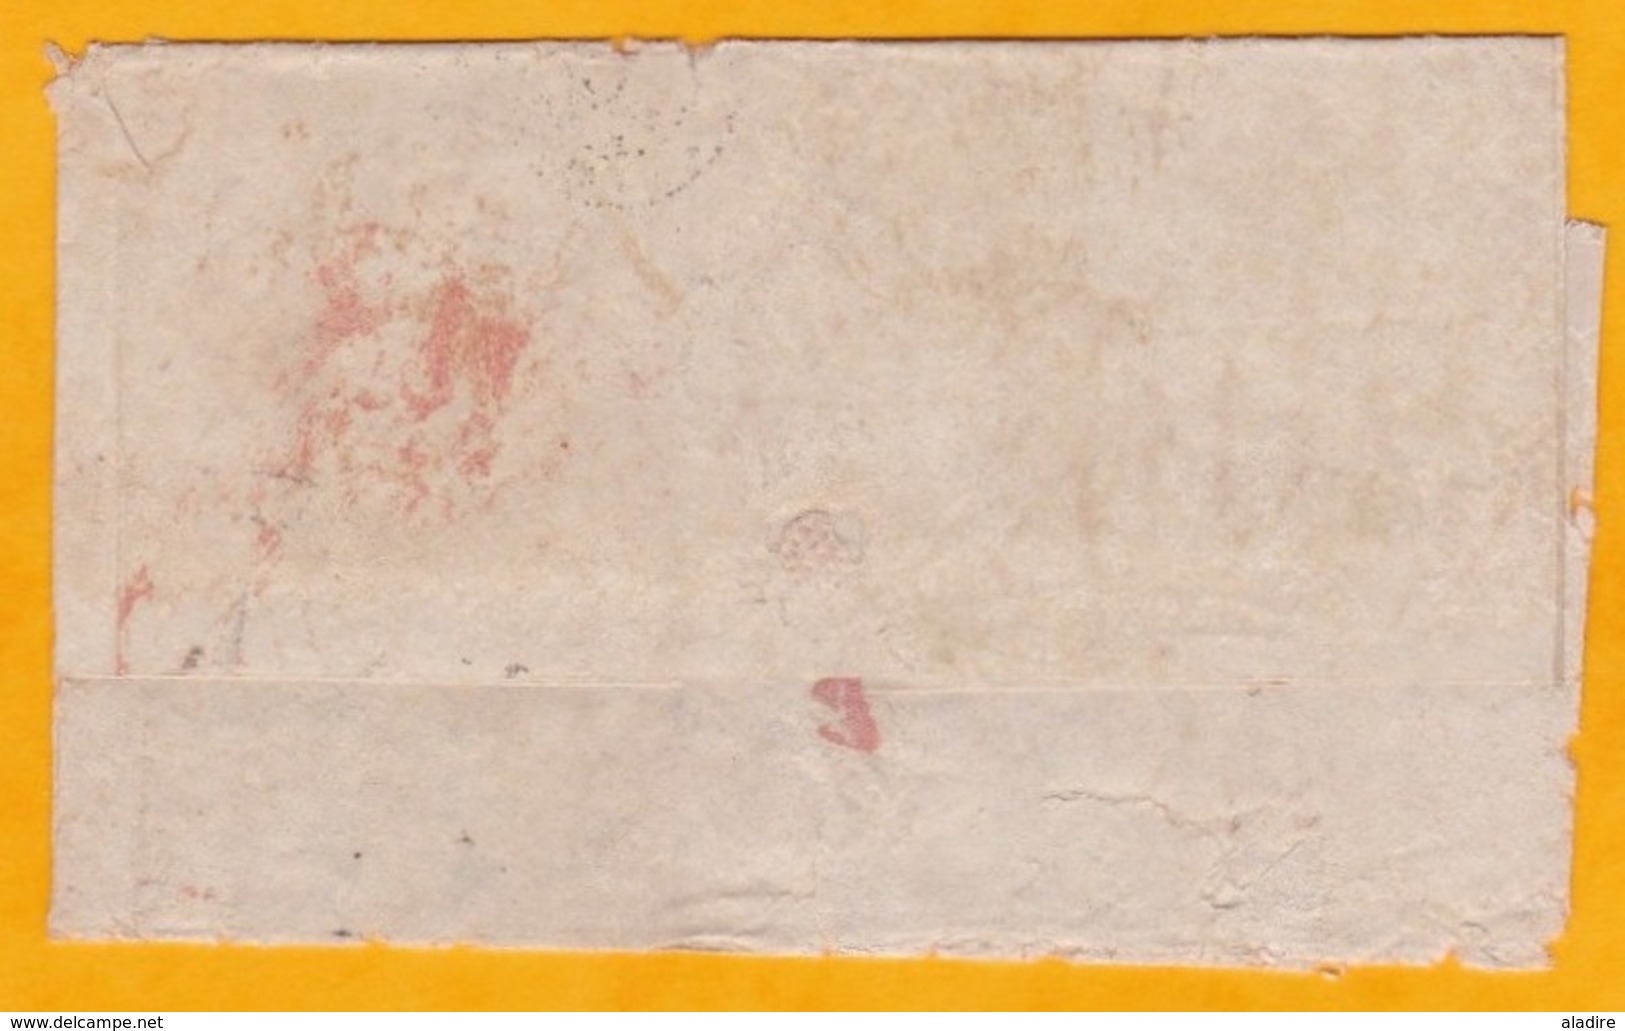 1850 - Enveloppe De Leith, Ecosse, GB Vers Cadiz, Espagne Via Paris, France - Cad Arrivée - Poststempel